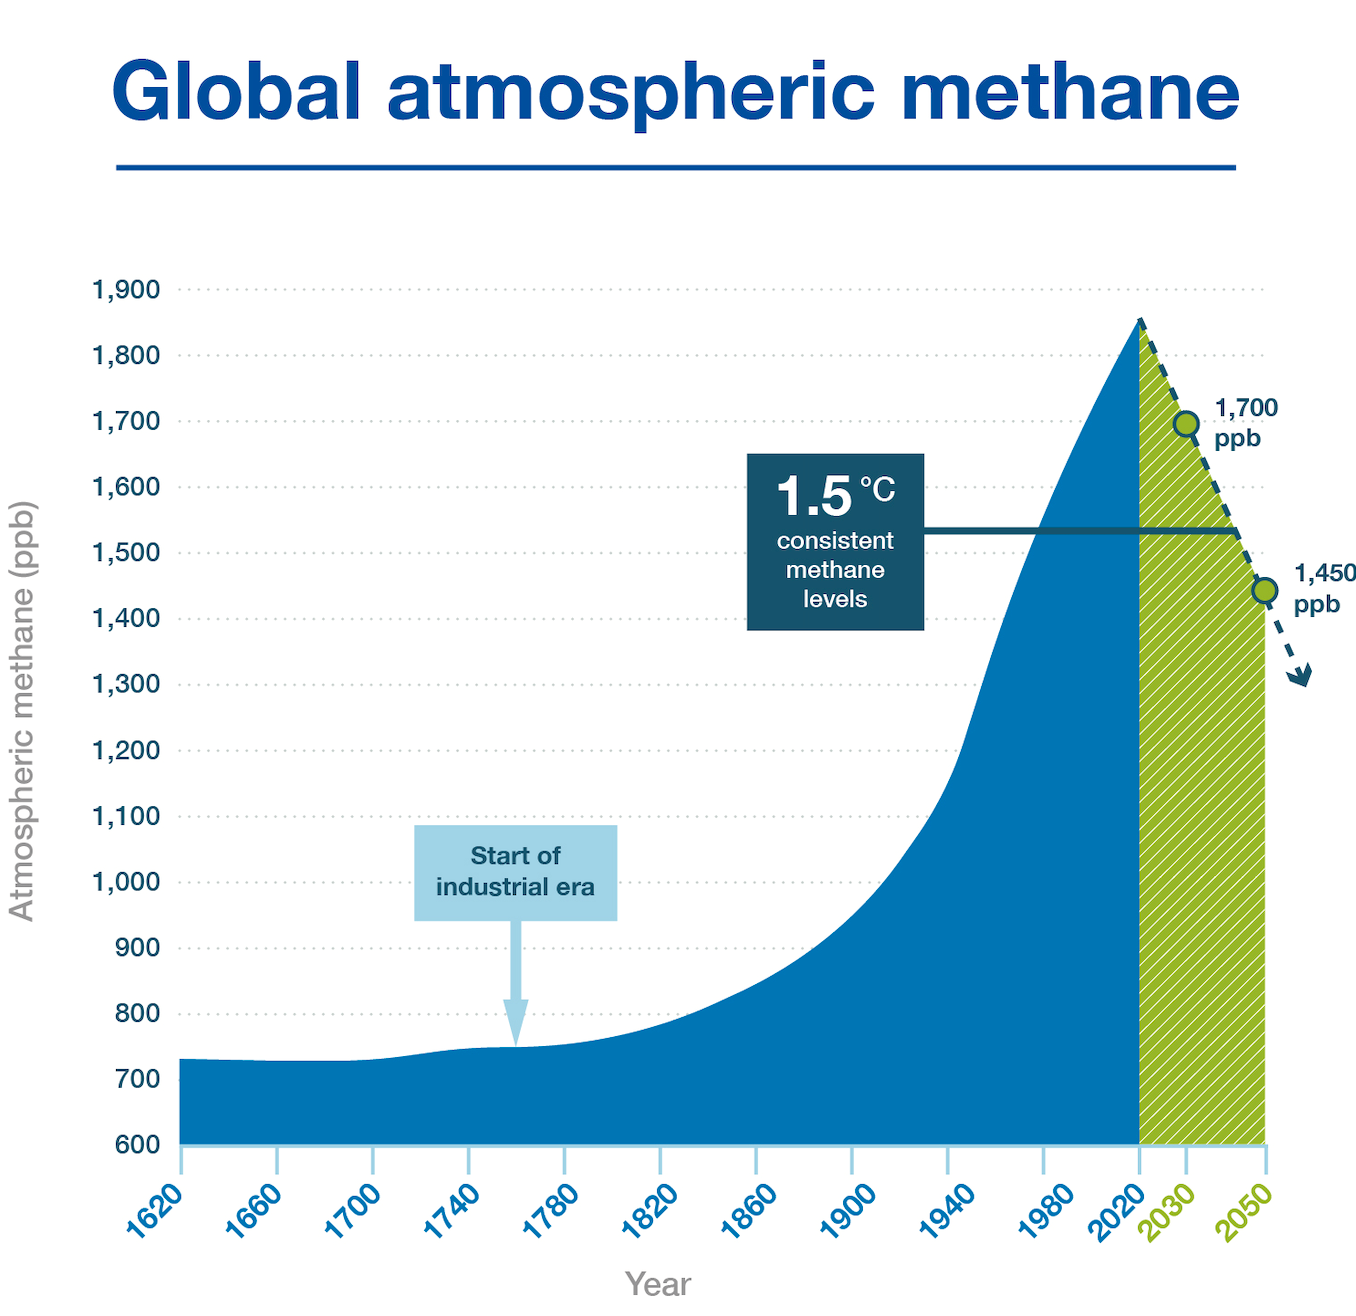 Halten av metangas har ökat kraftigt, men måste brant ner om klimatmålen ska kunna nås.